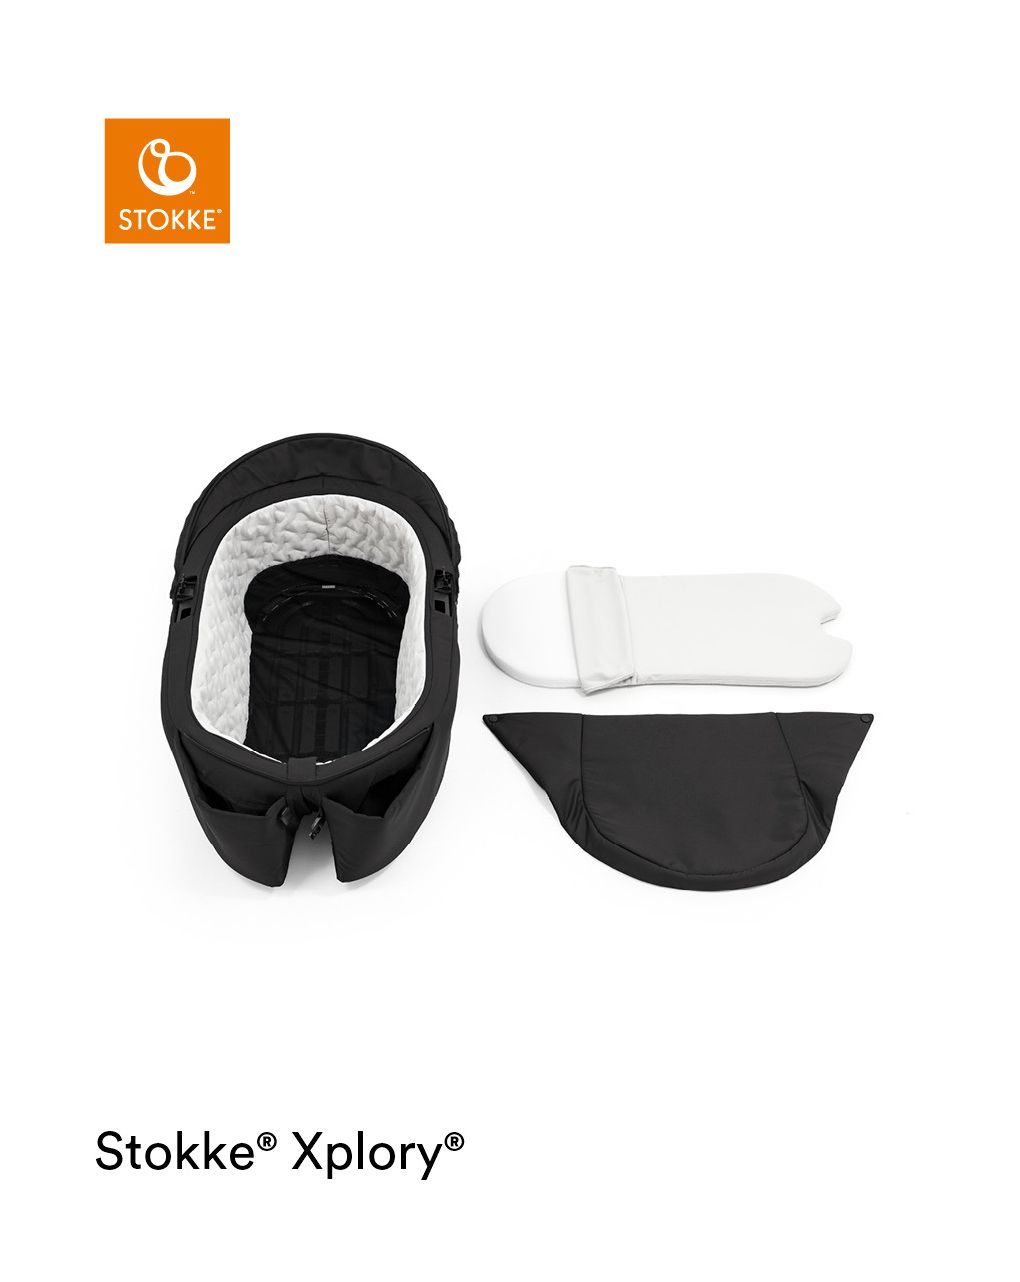 Navetta stokke® xplory® x
per il comfort del neonato anche fuori casa - Stokke